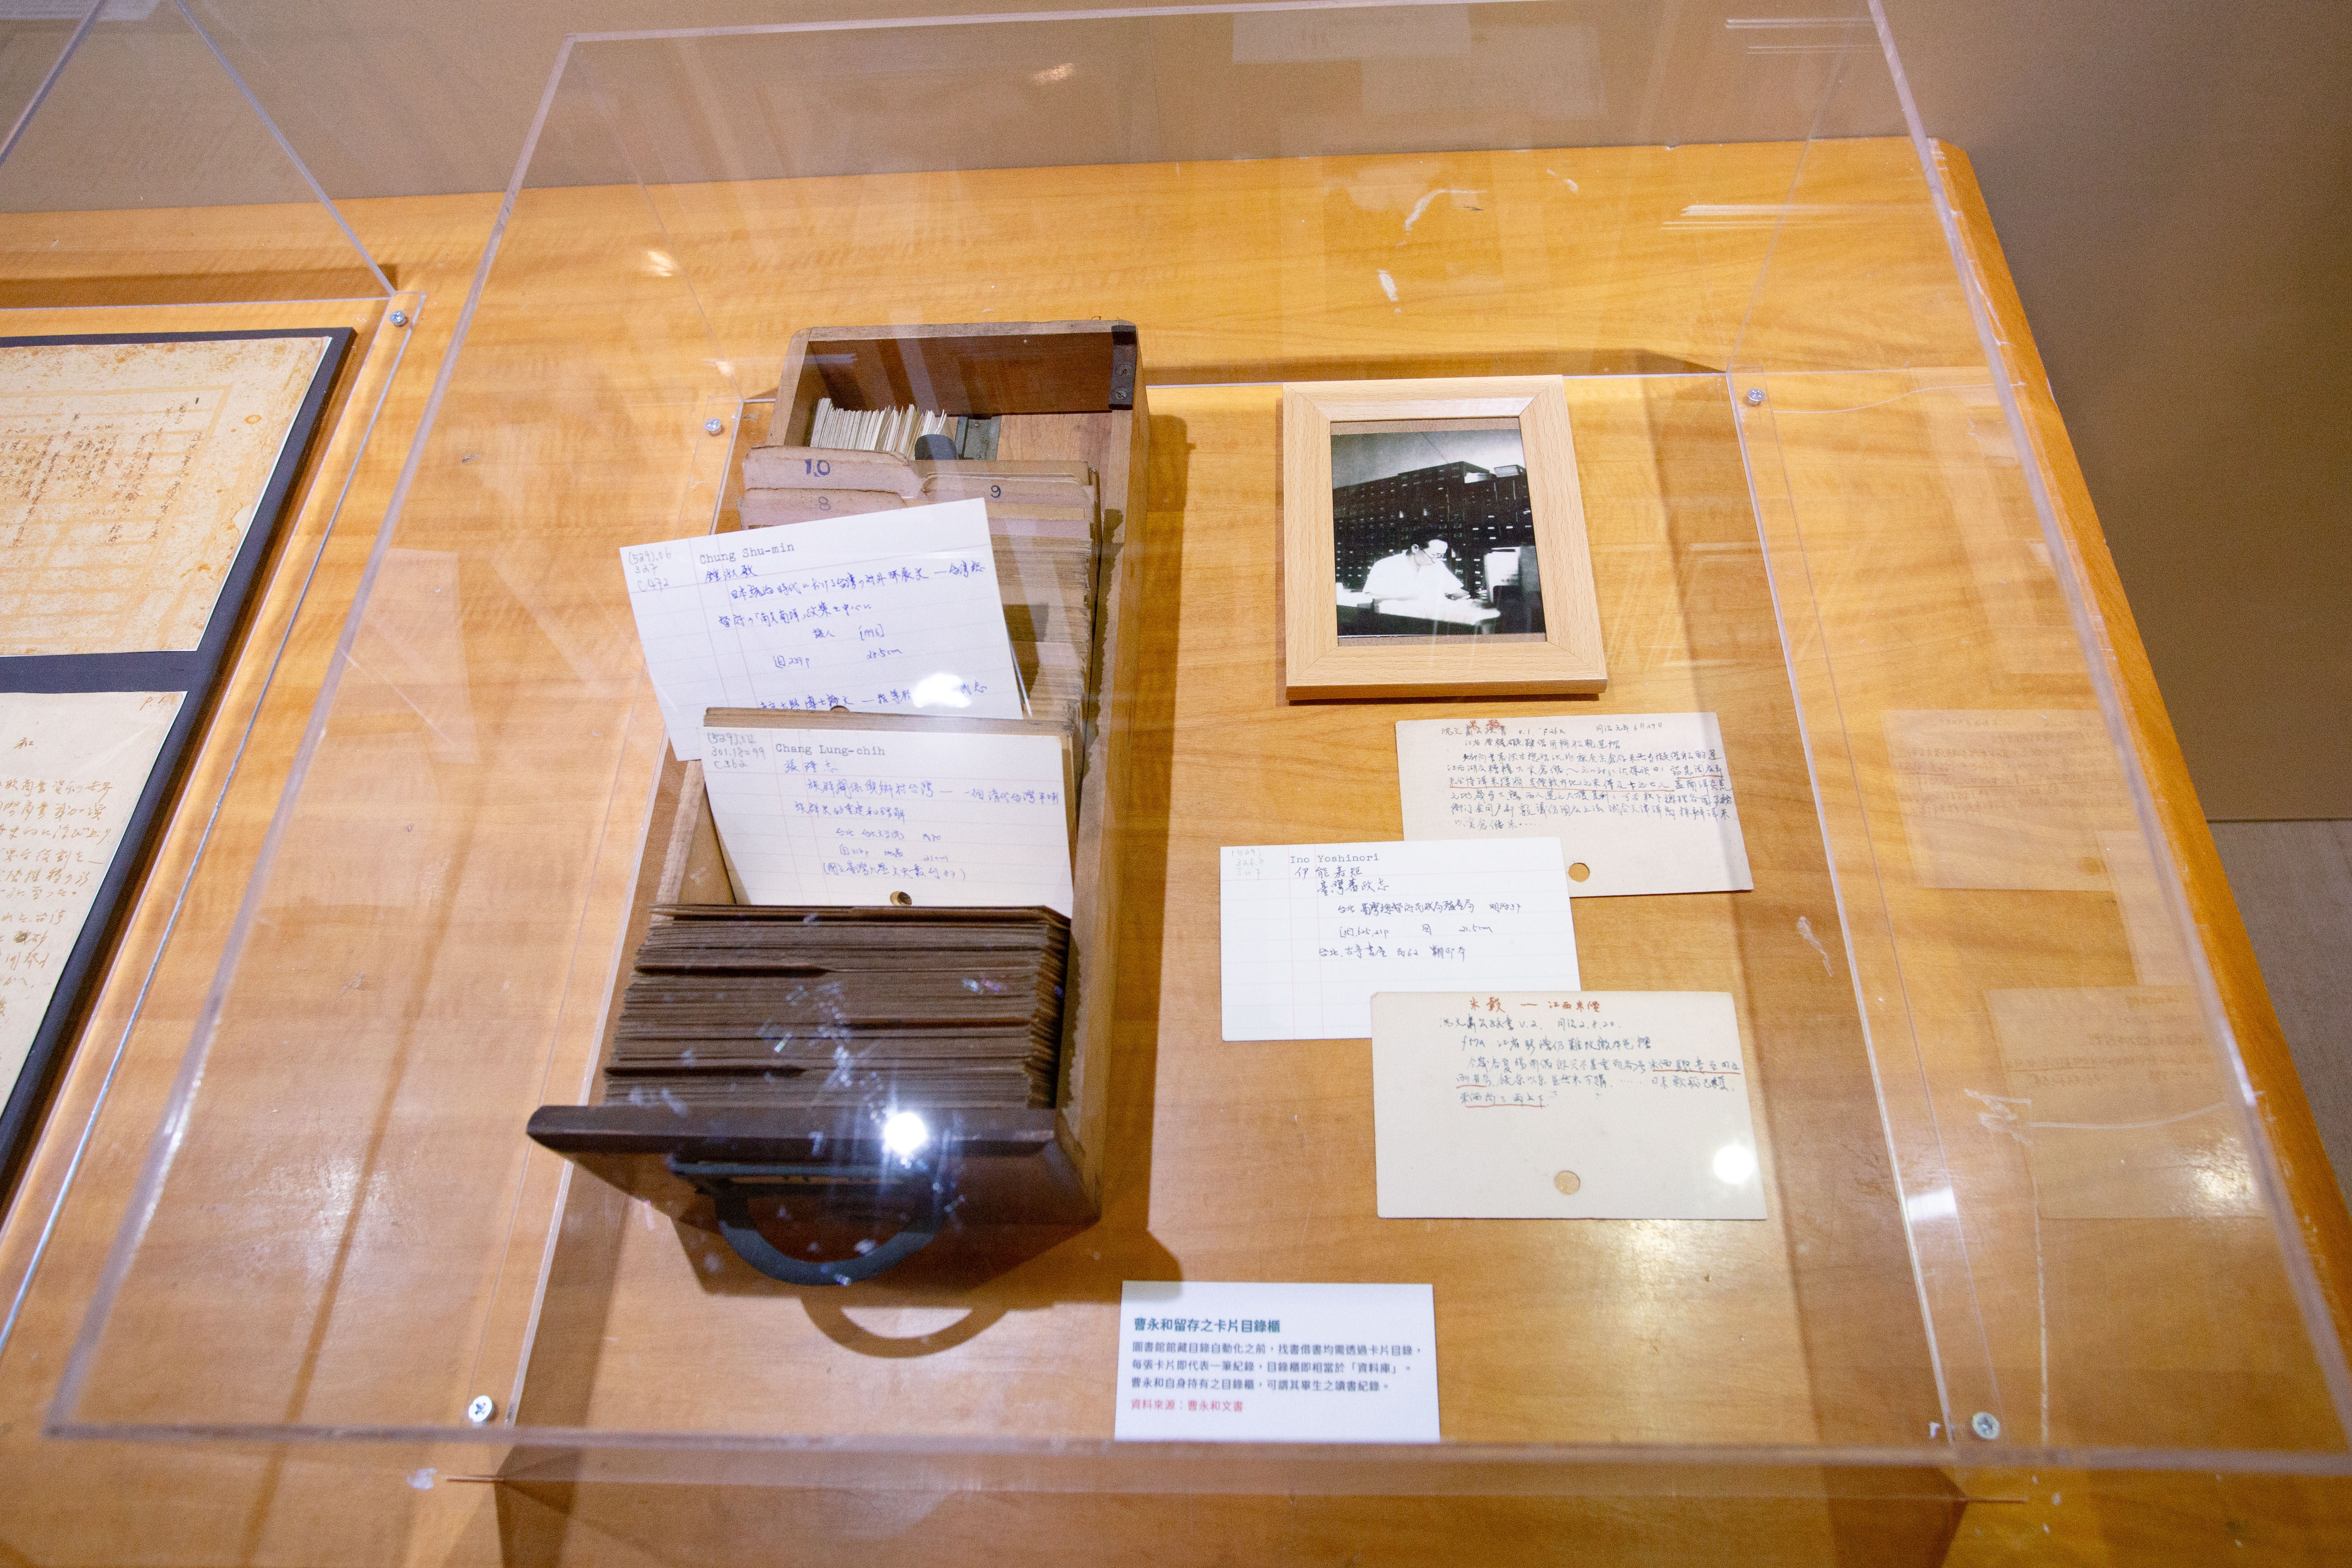 已故臺灣史學者曾永和院士留存之卡片目錄櫃，從中可見其讀書與研究紀錄